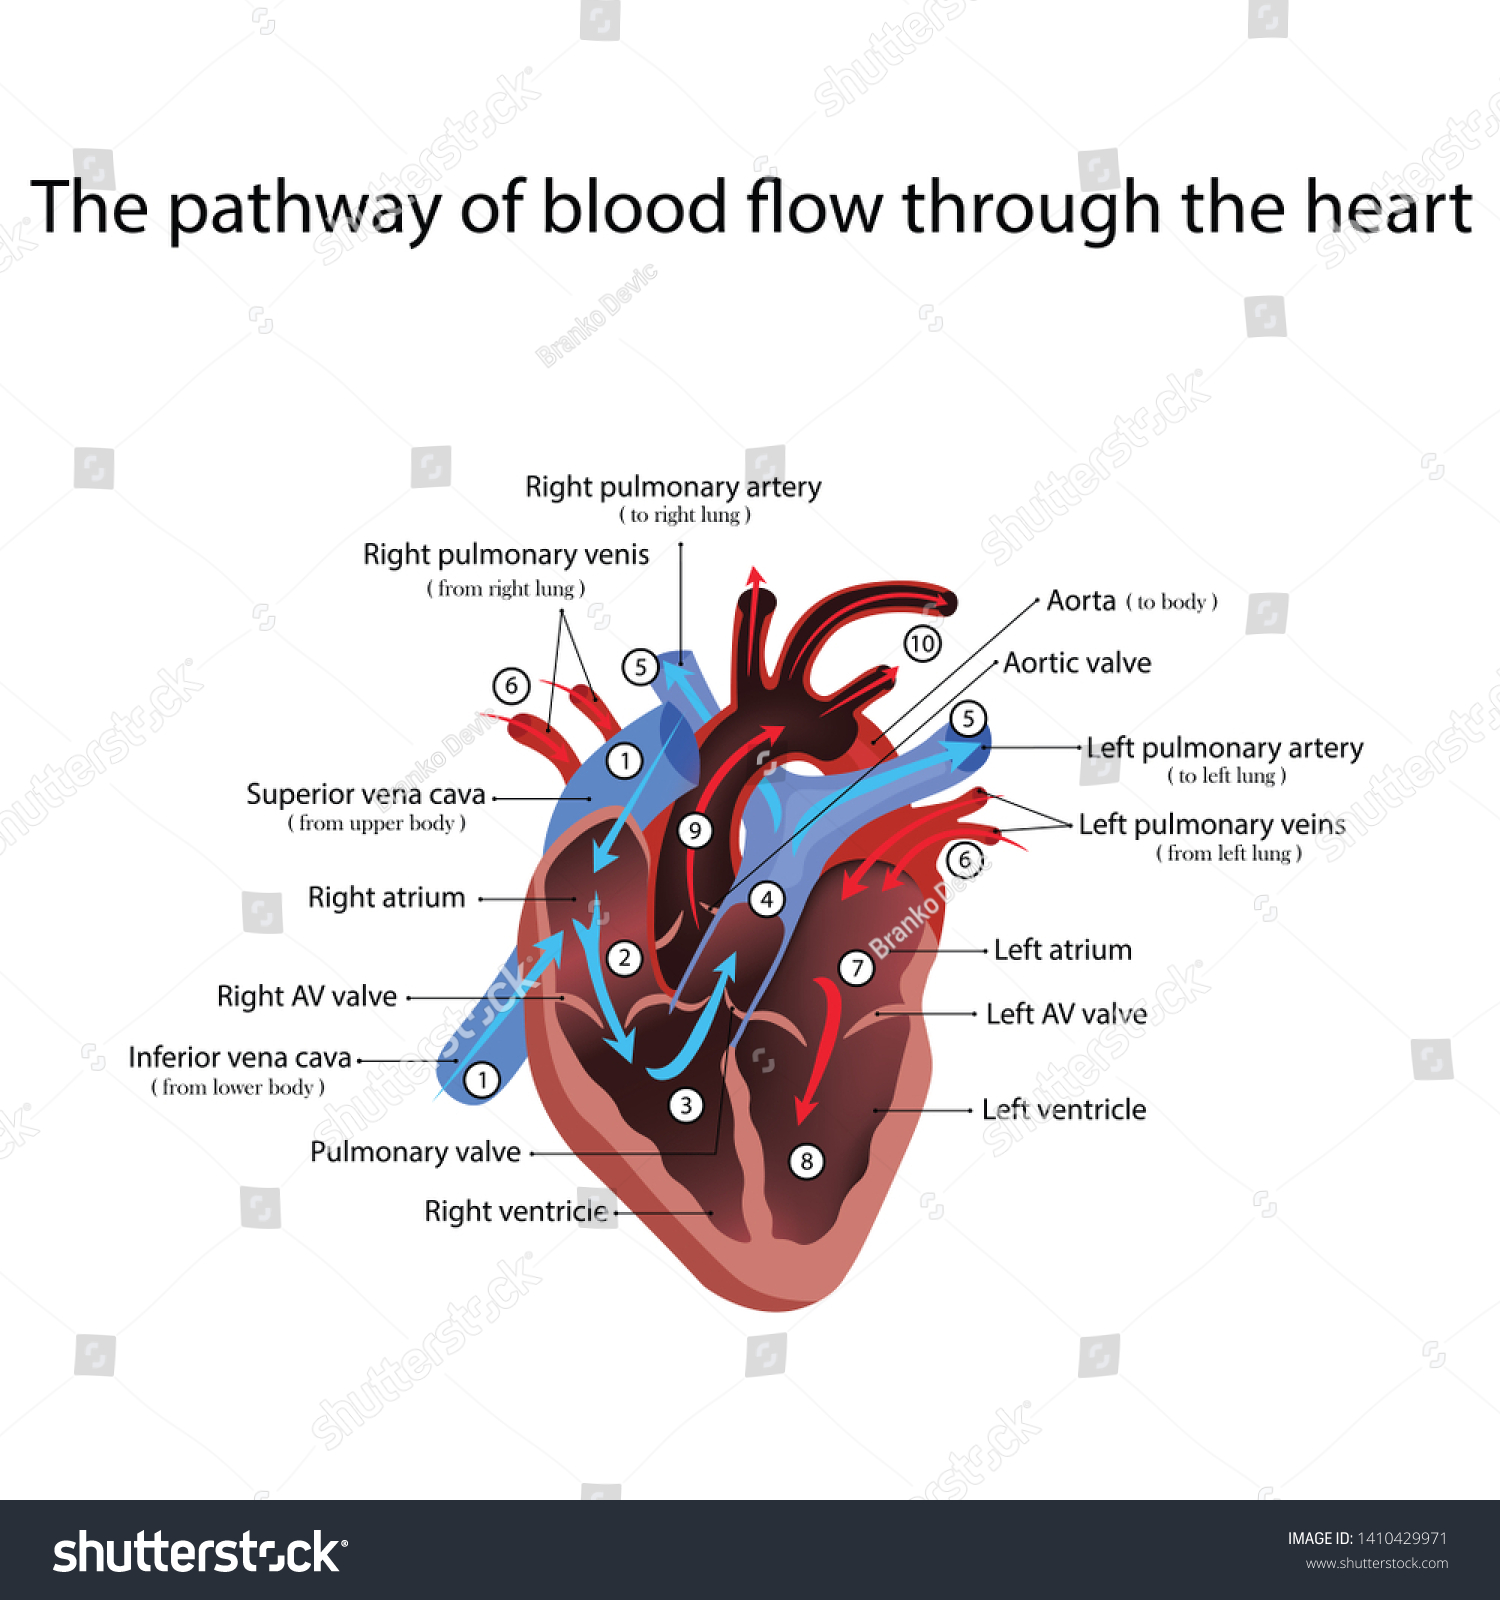 心臓解剖学と心臓疾患の種類のイラスト のイラスト素材